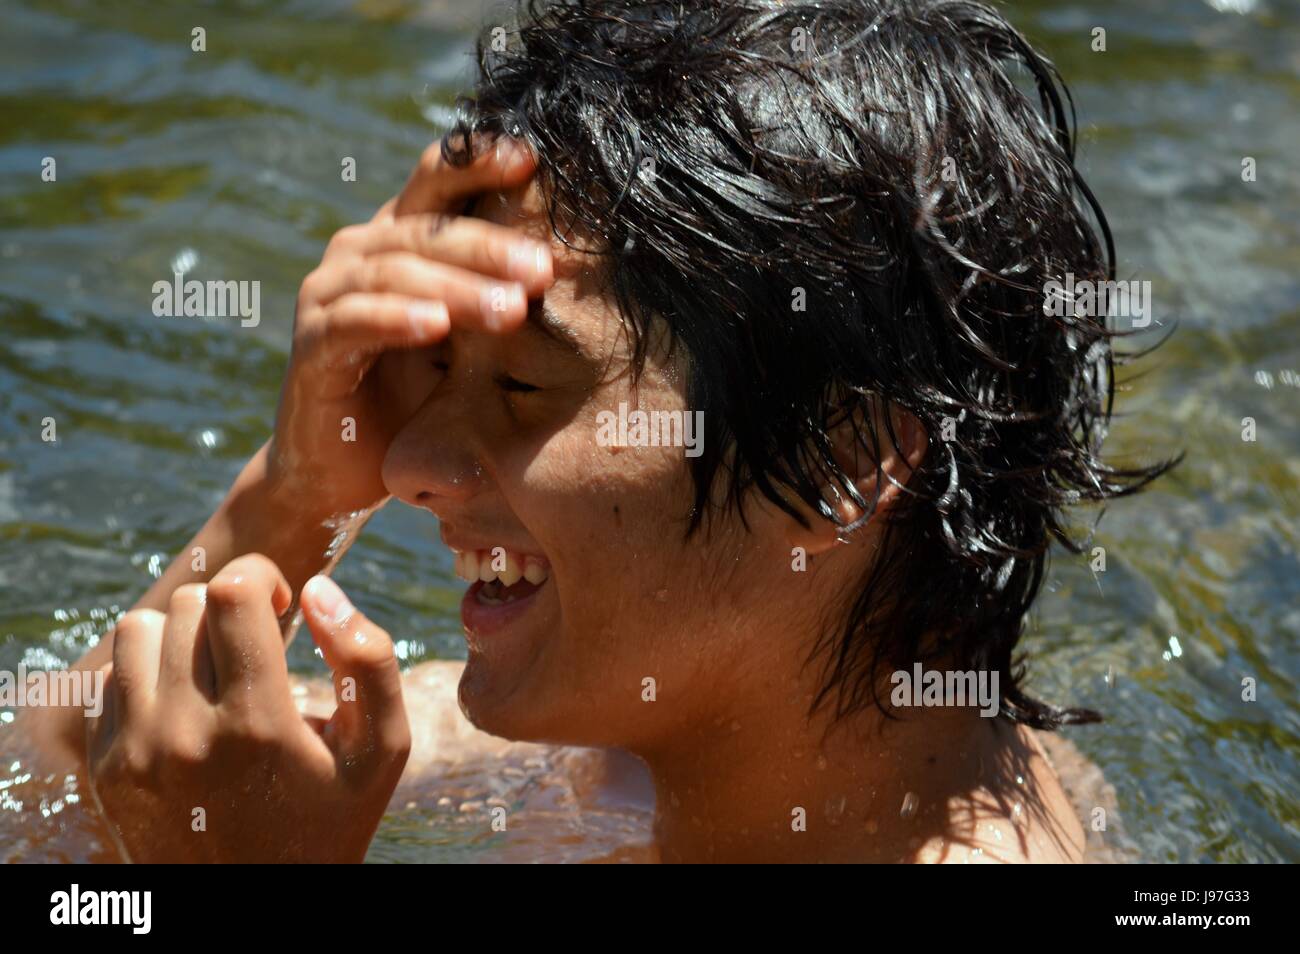 Junger Teenager genießt ein Bad im Fluss Calamuchita, Cordoba, Argentinien Stockfoto